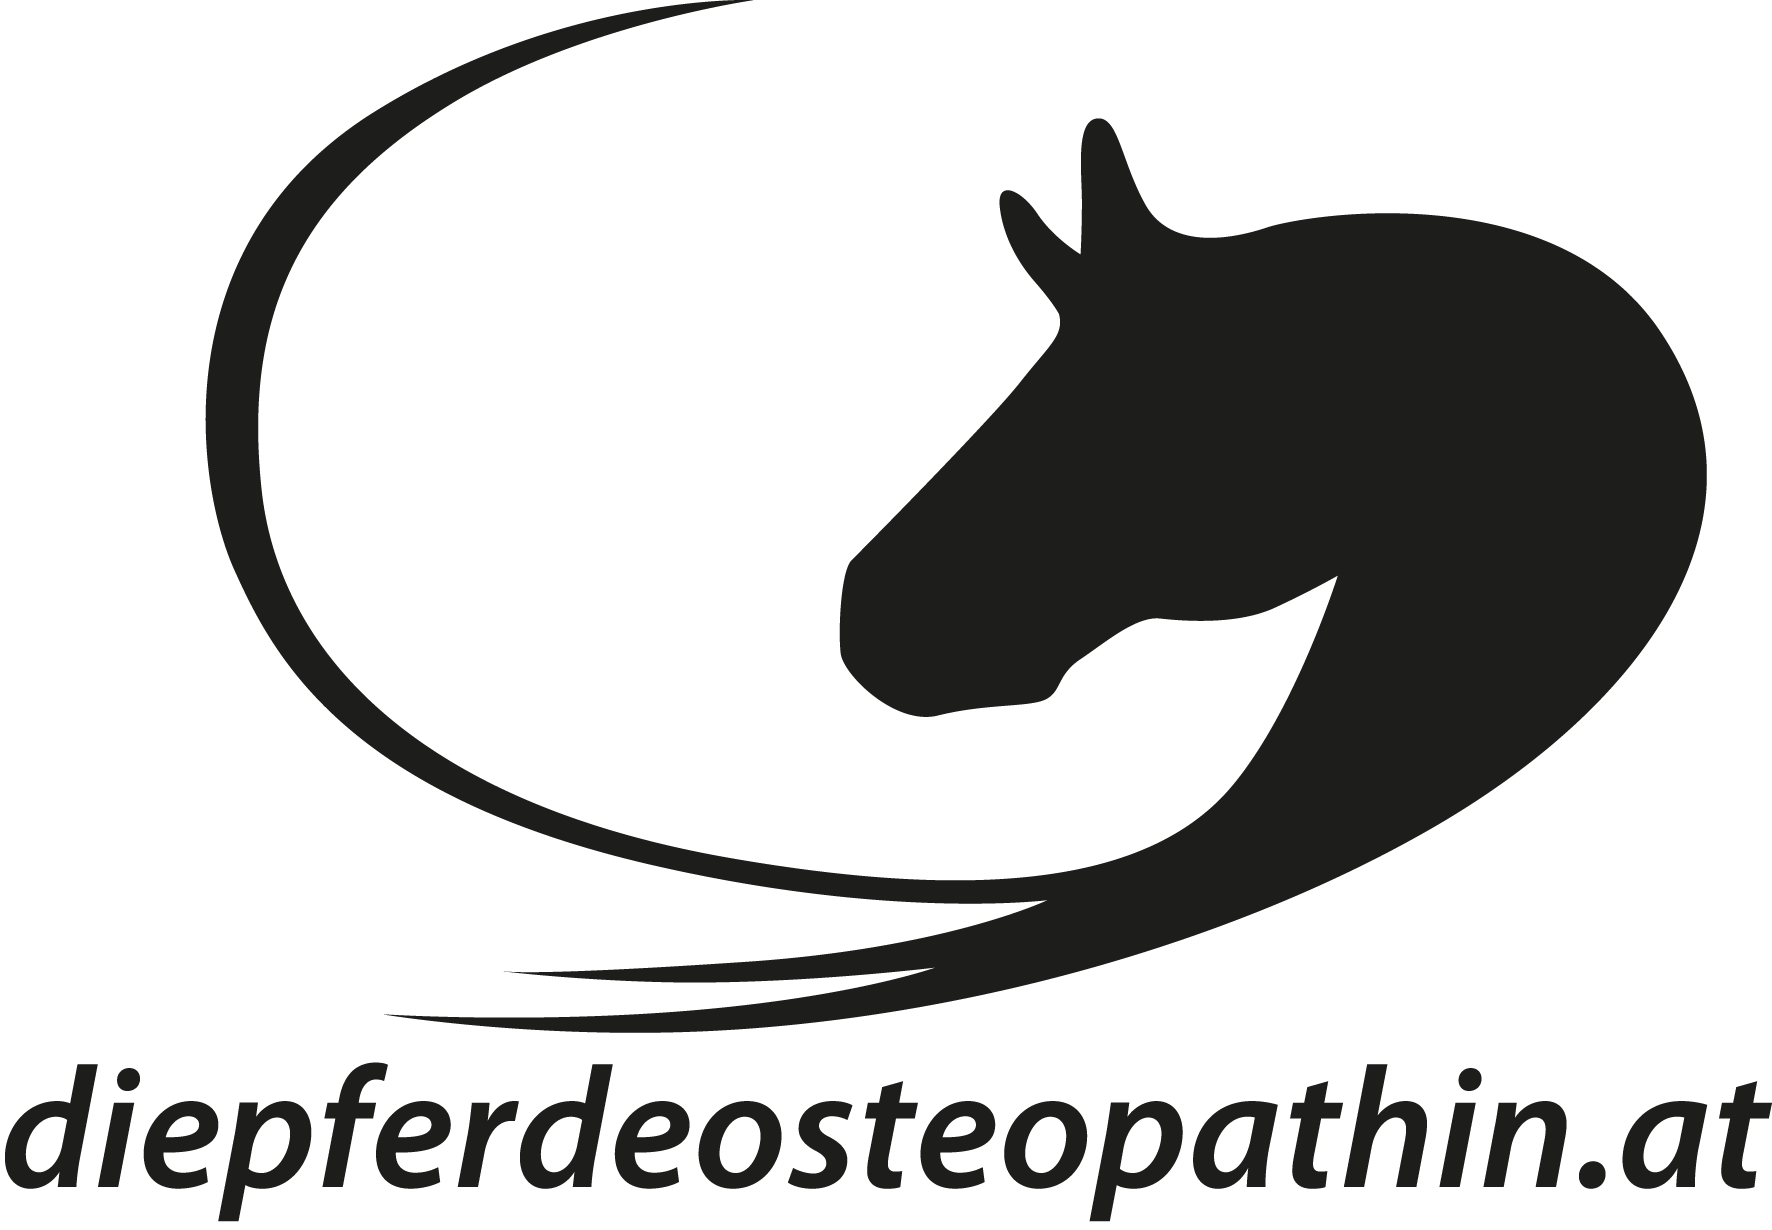 oesterreicher die pferde osteopathin logo 